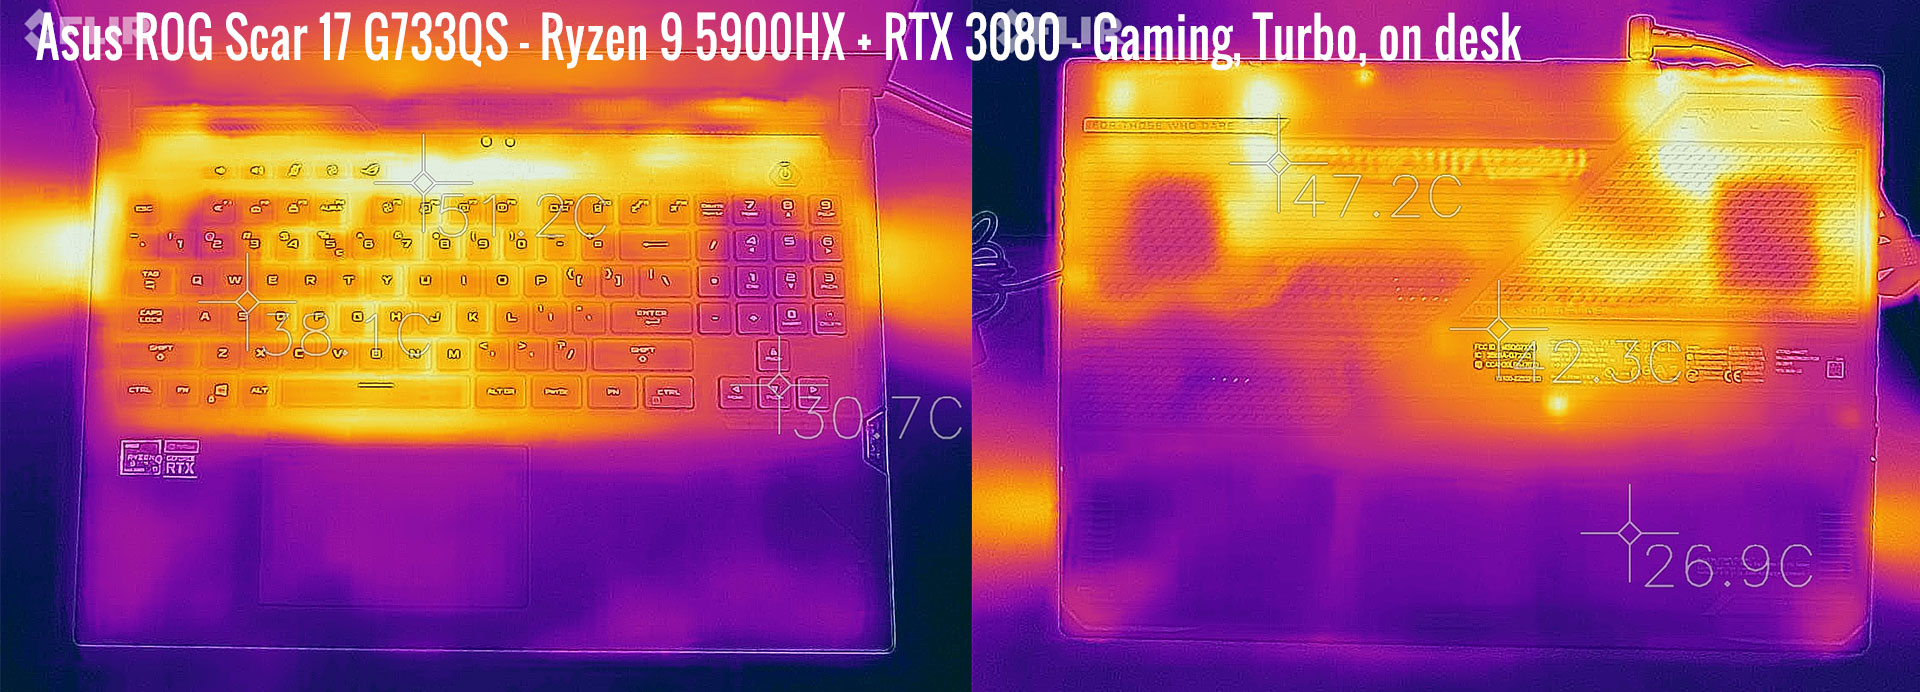 temperatures scar17 g733qs gaming turbo